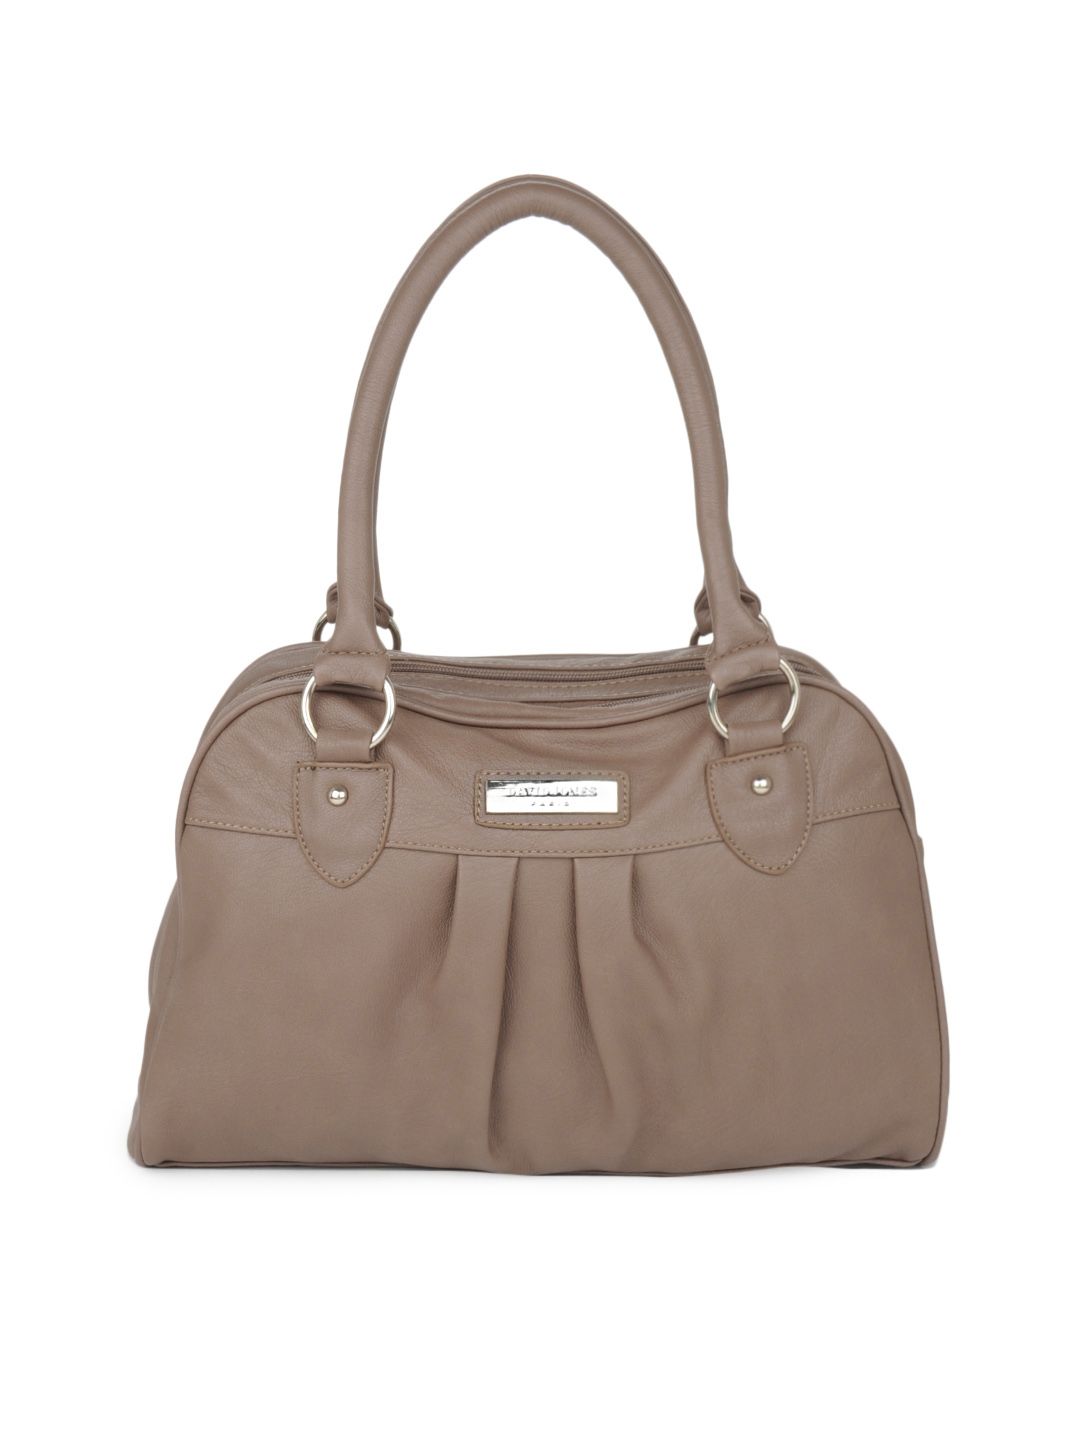 Buy David Jones Taupe Handbag - 294 - Accessories for Women - 124790